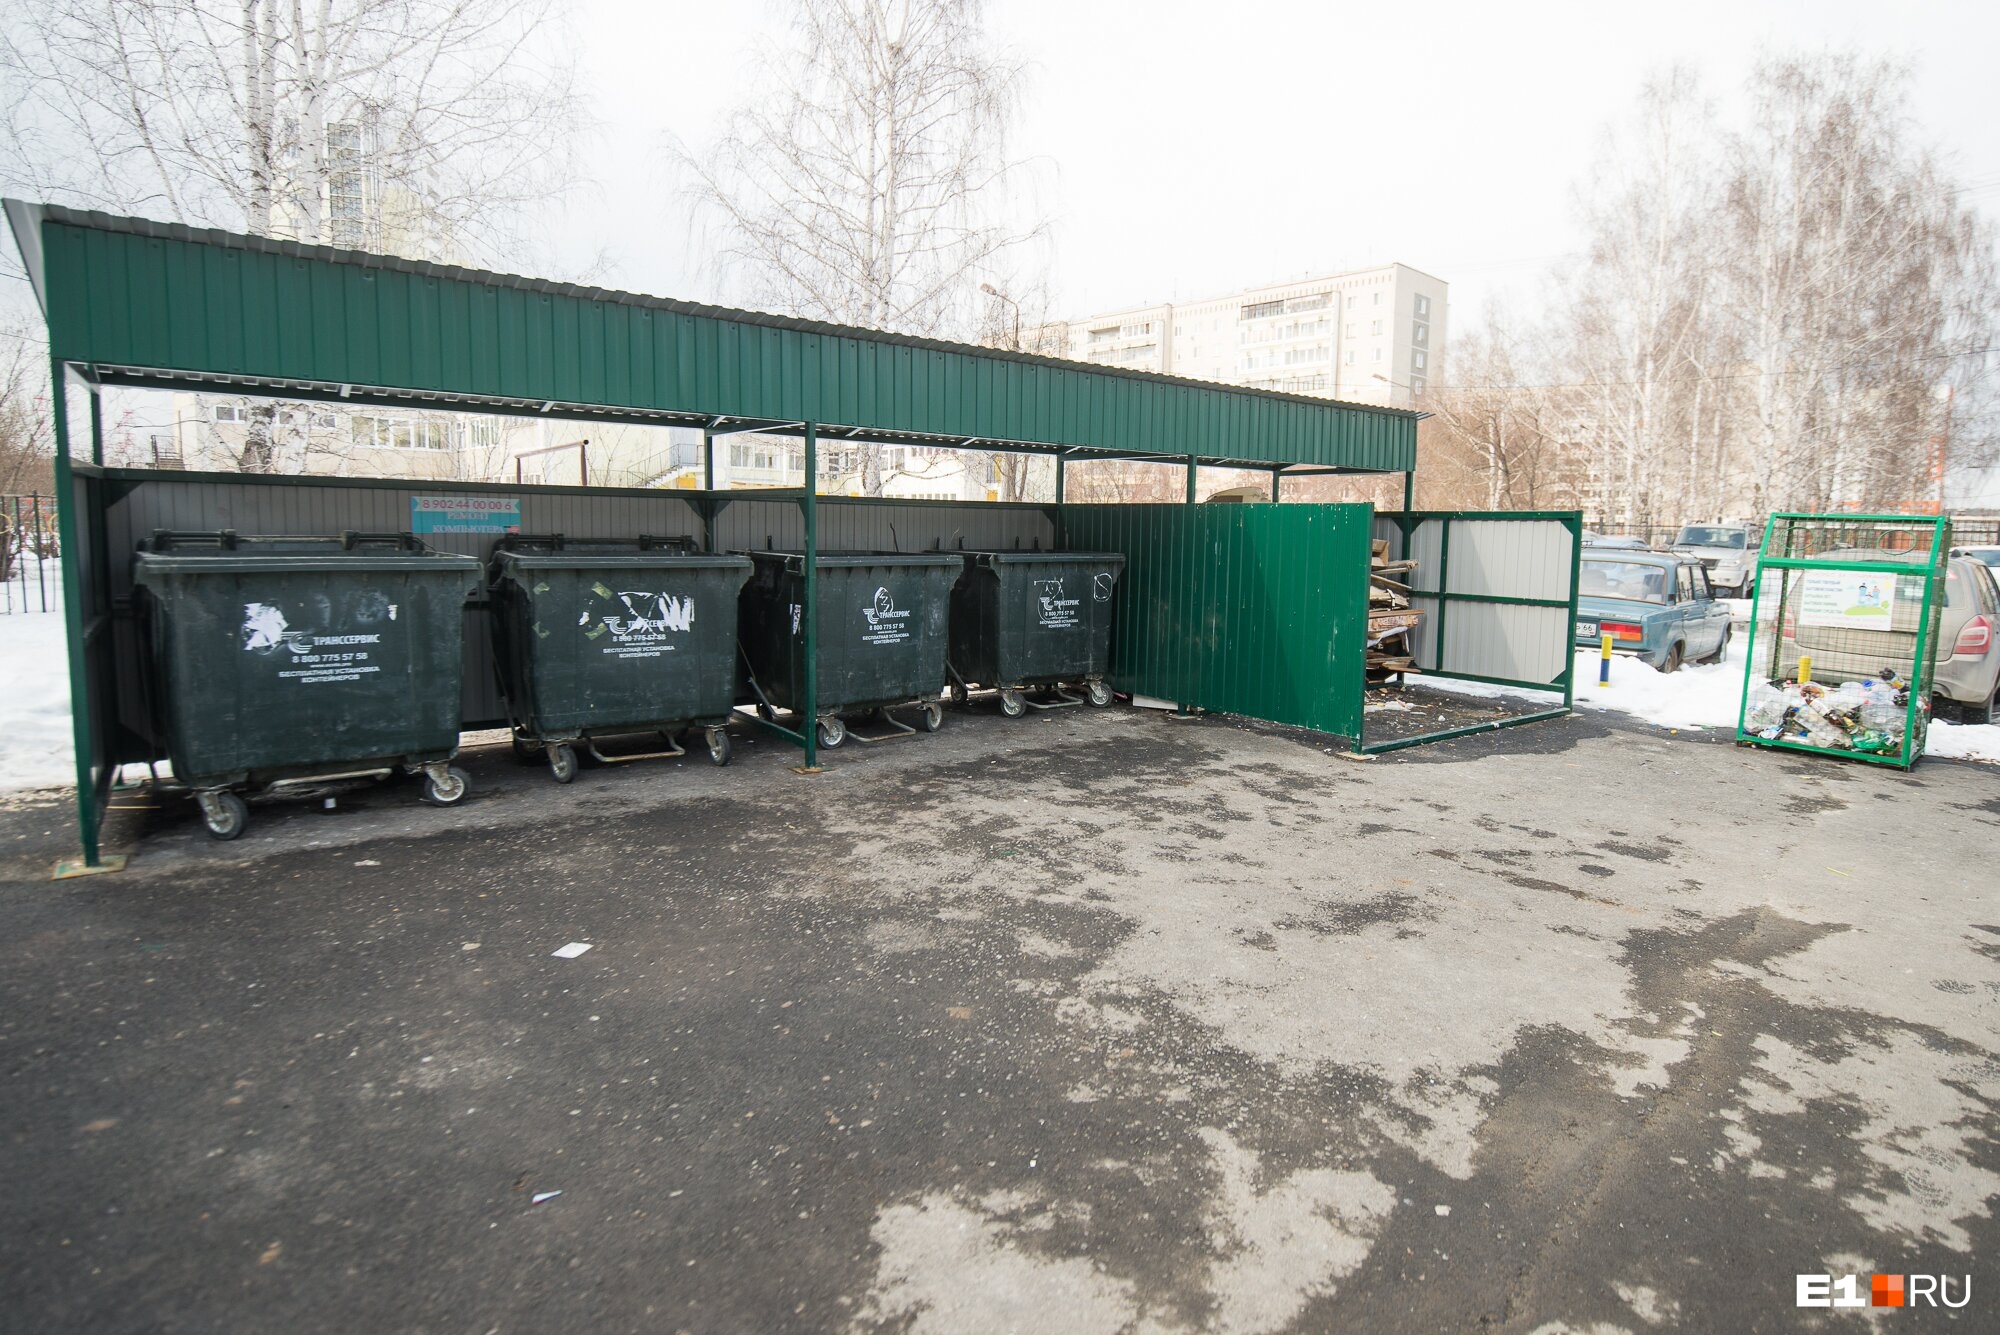 Так выглядит контейнерная площадка: 4 мусорных бака, сетка под пластик, отсек под крупногабаритные отходы